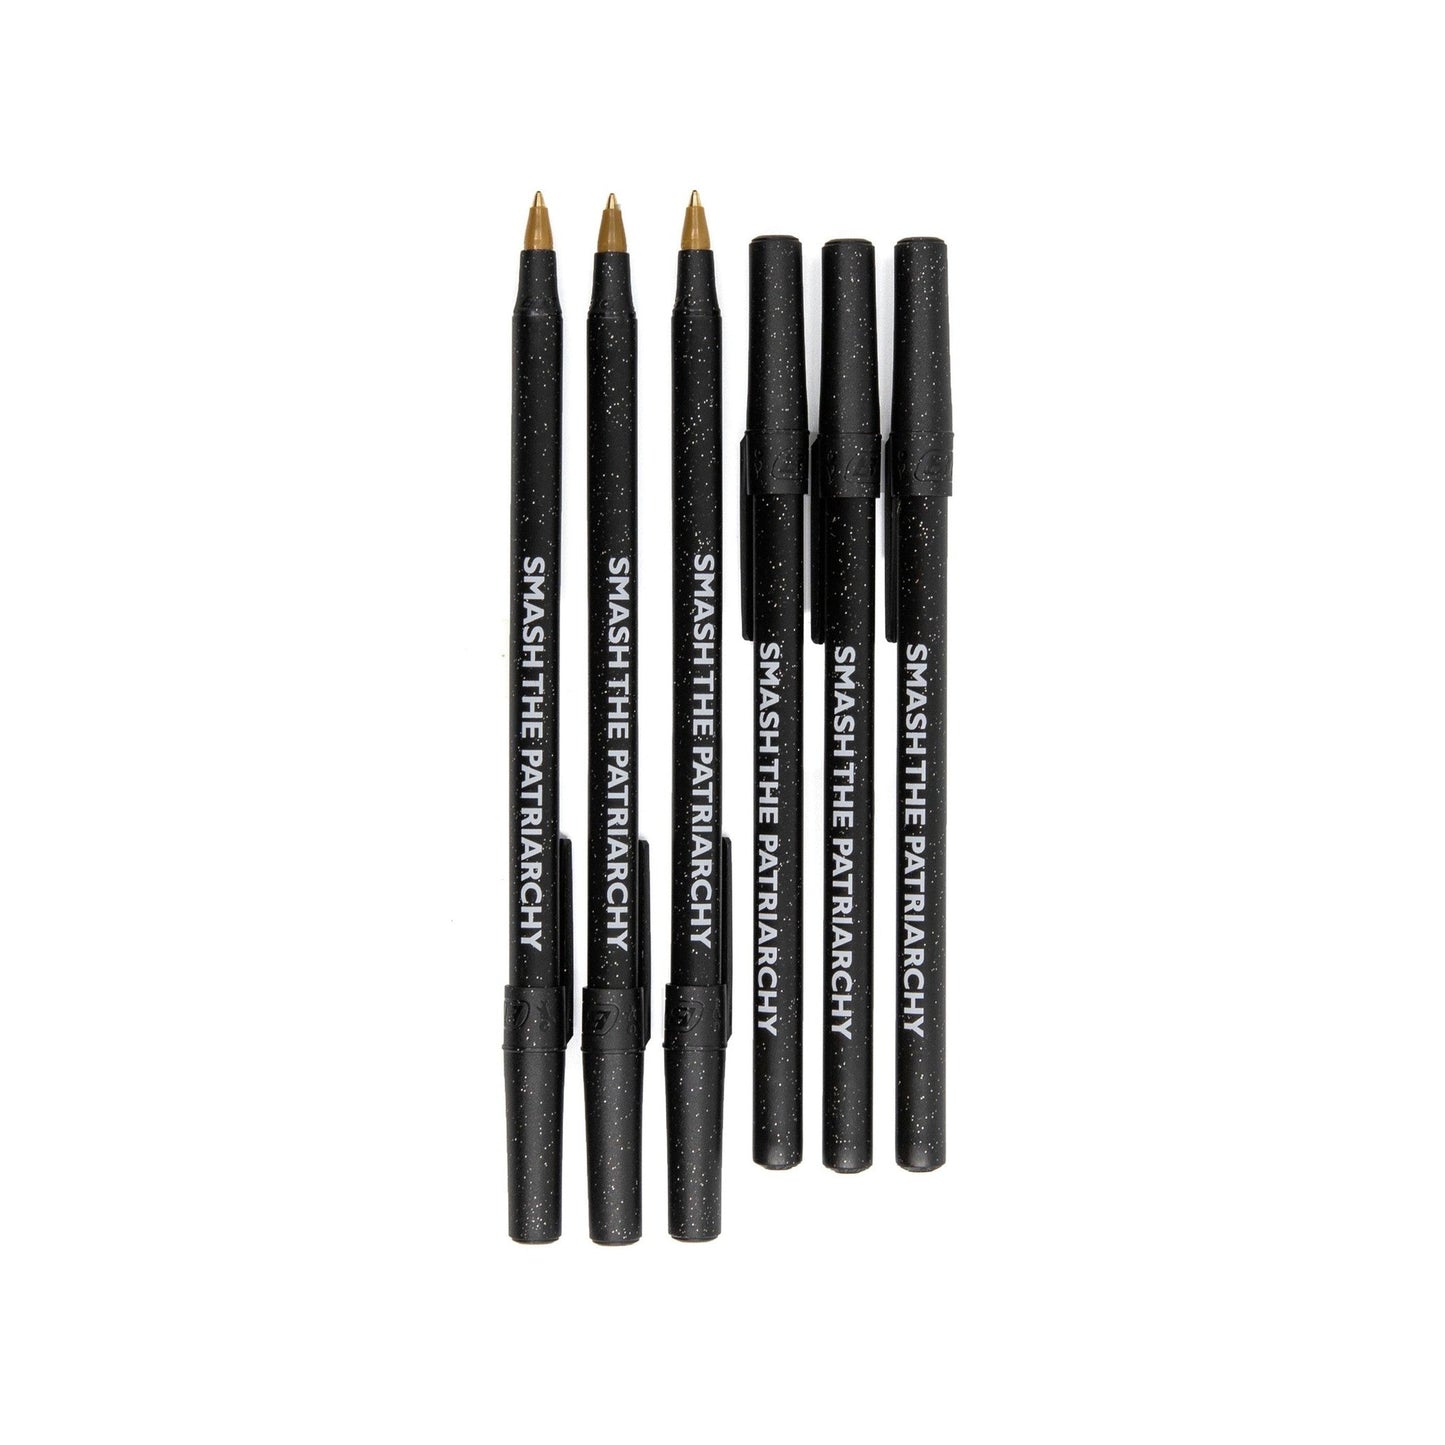 Smash the Patriarchy 6 Pens Black Sparkle Pen Pack